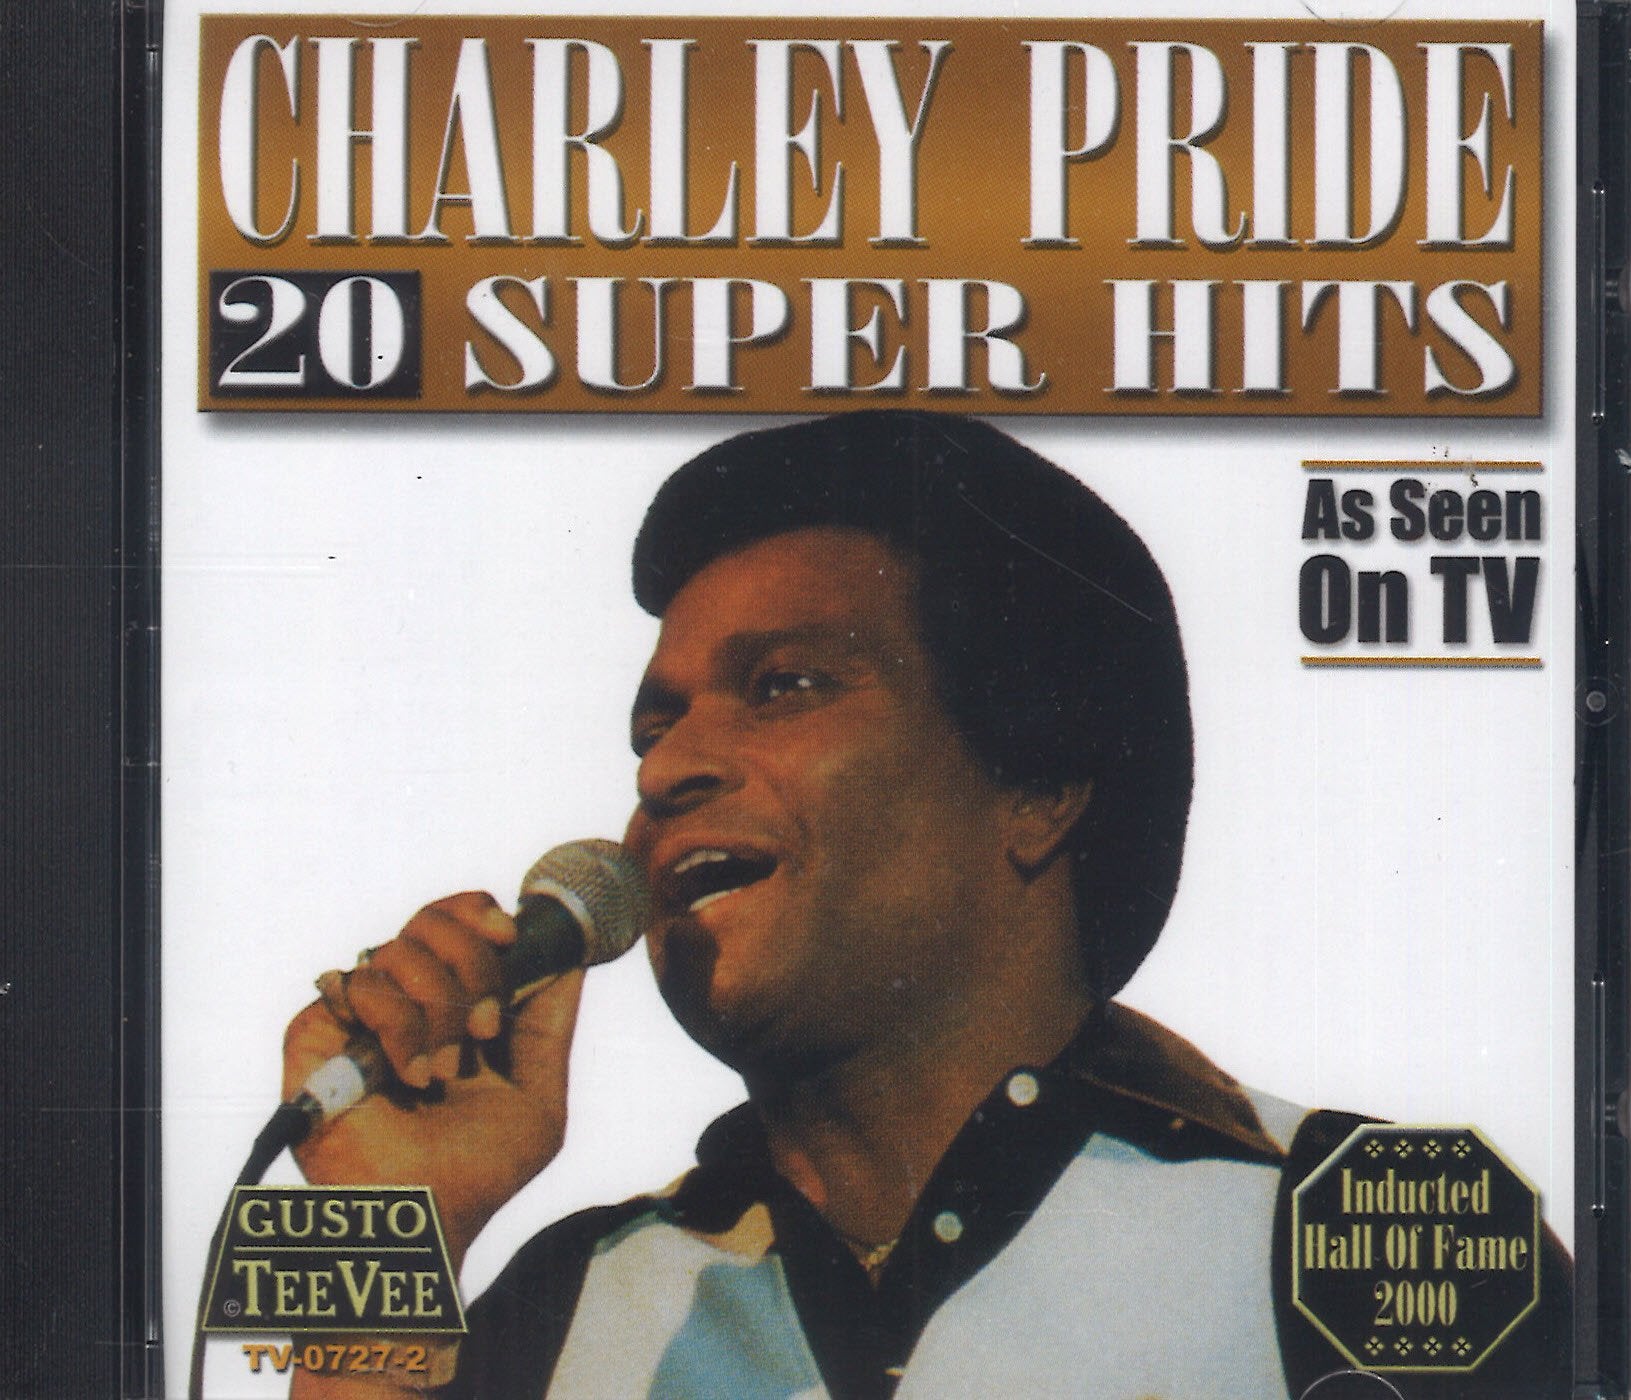 Charley Pride 20 Super Hits